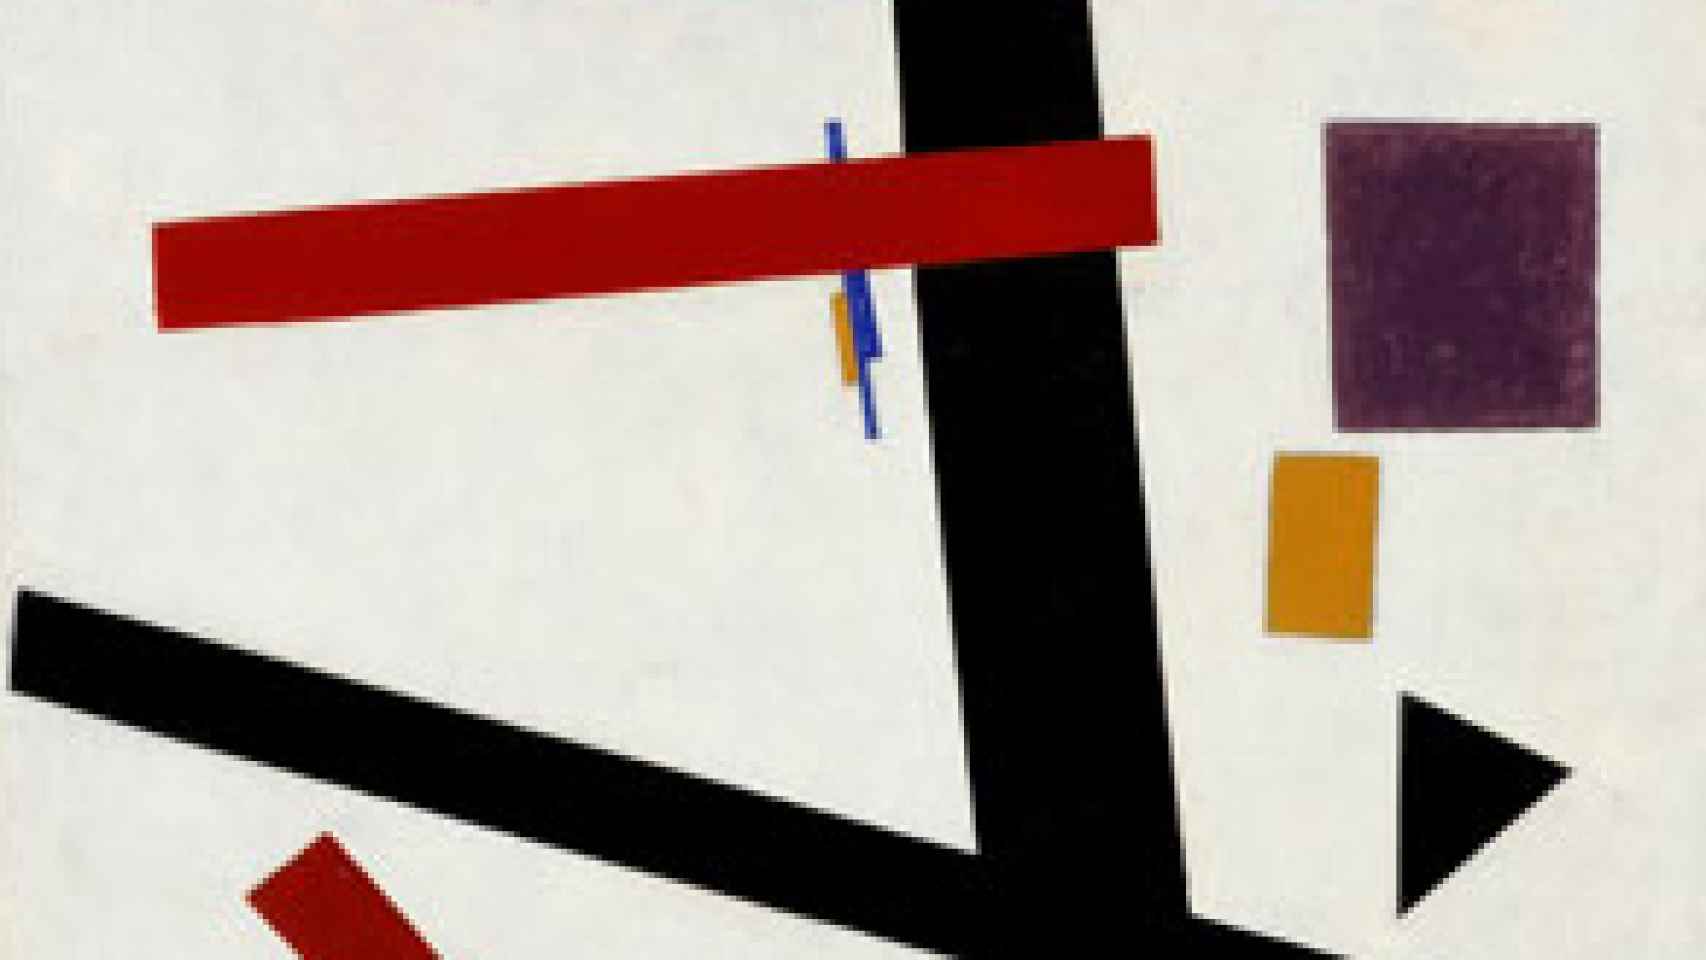 Image: Malevich, viaje de ida y vuelta